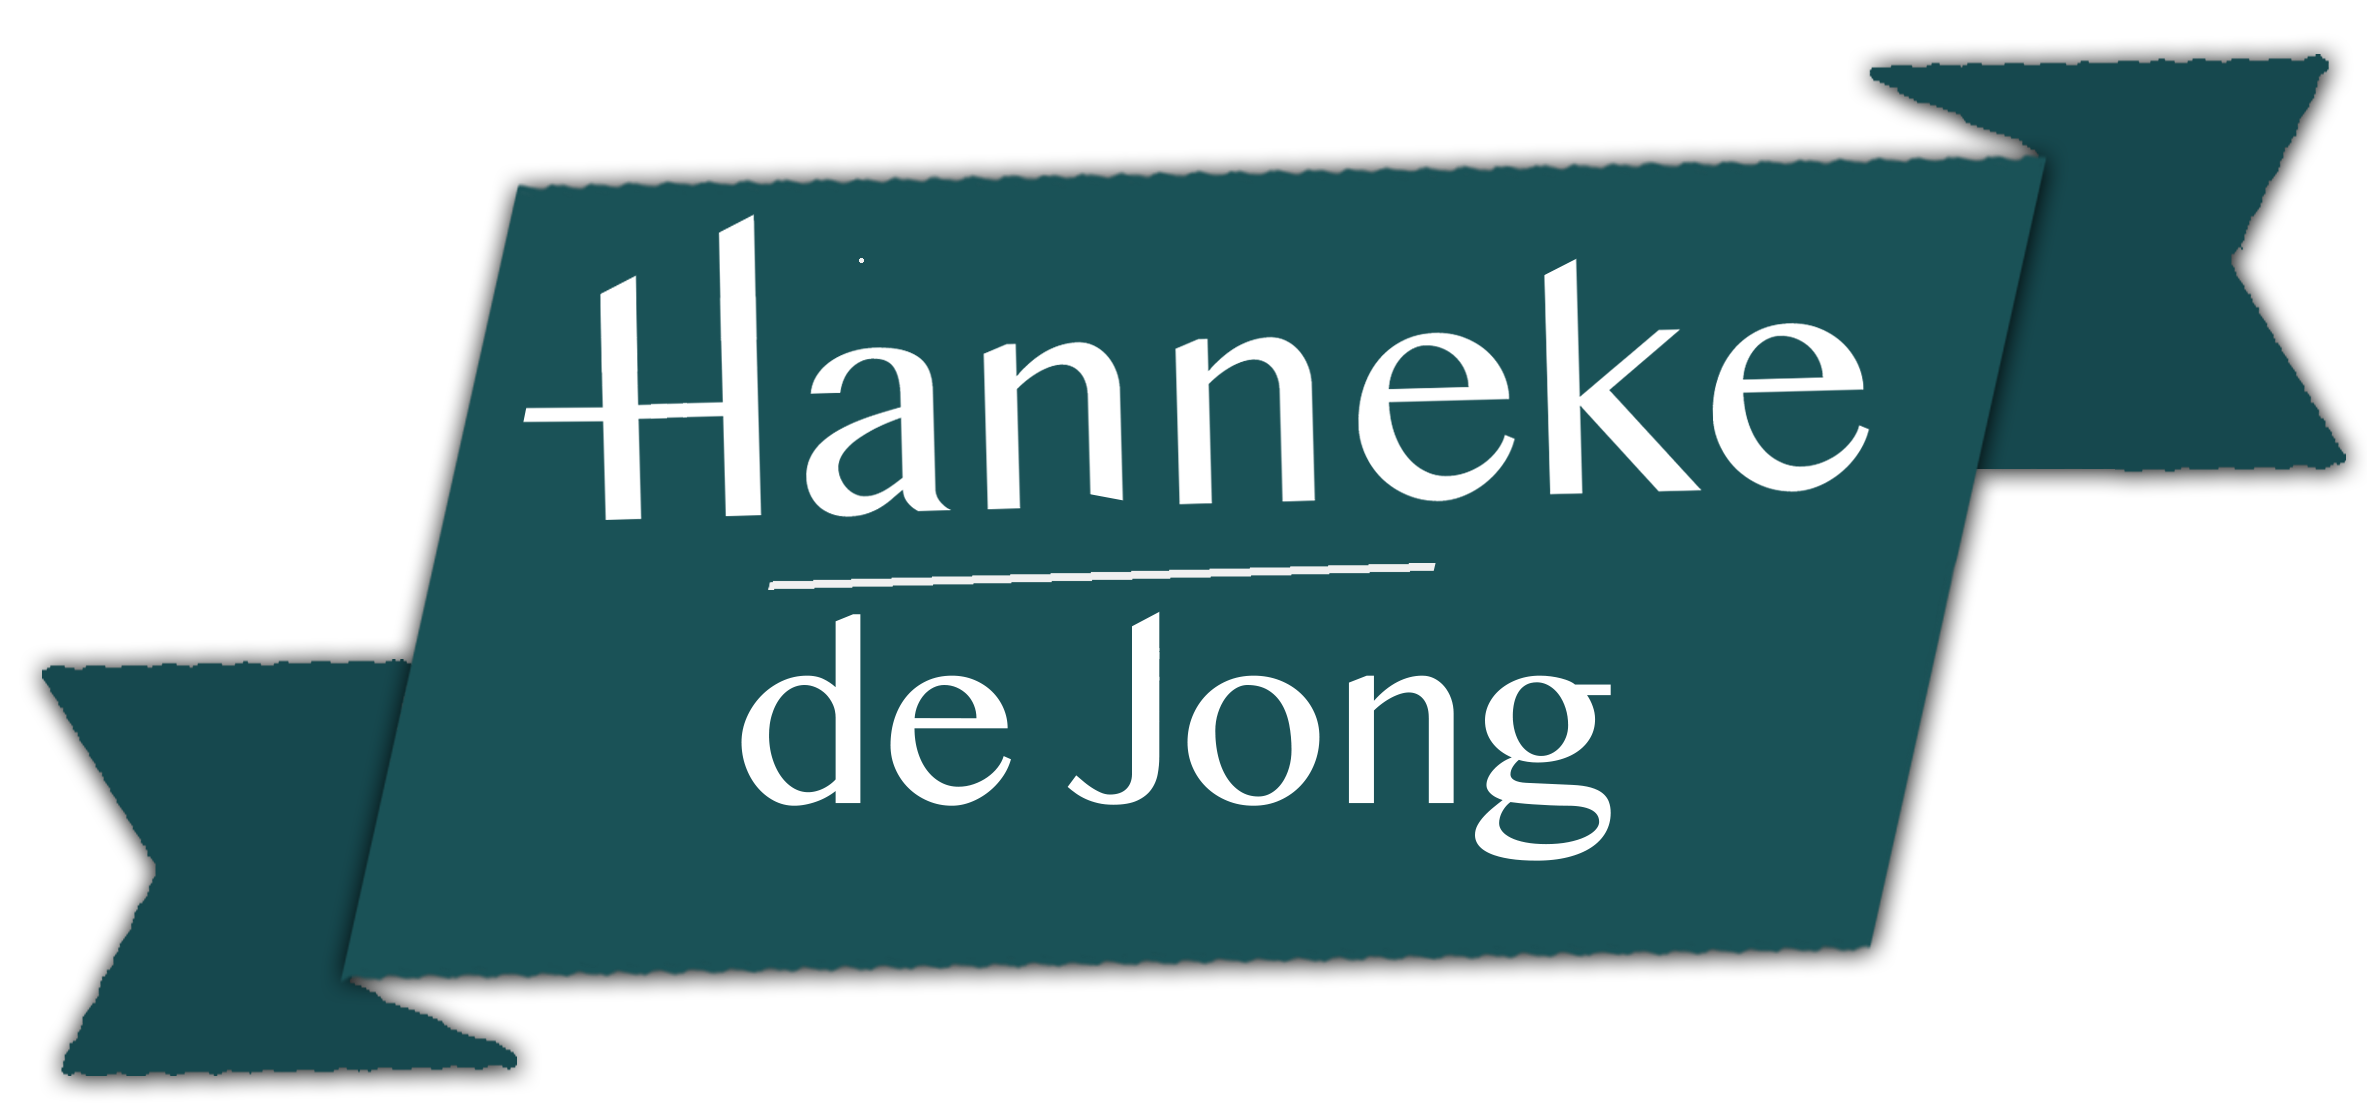 Hanneke de Jong